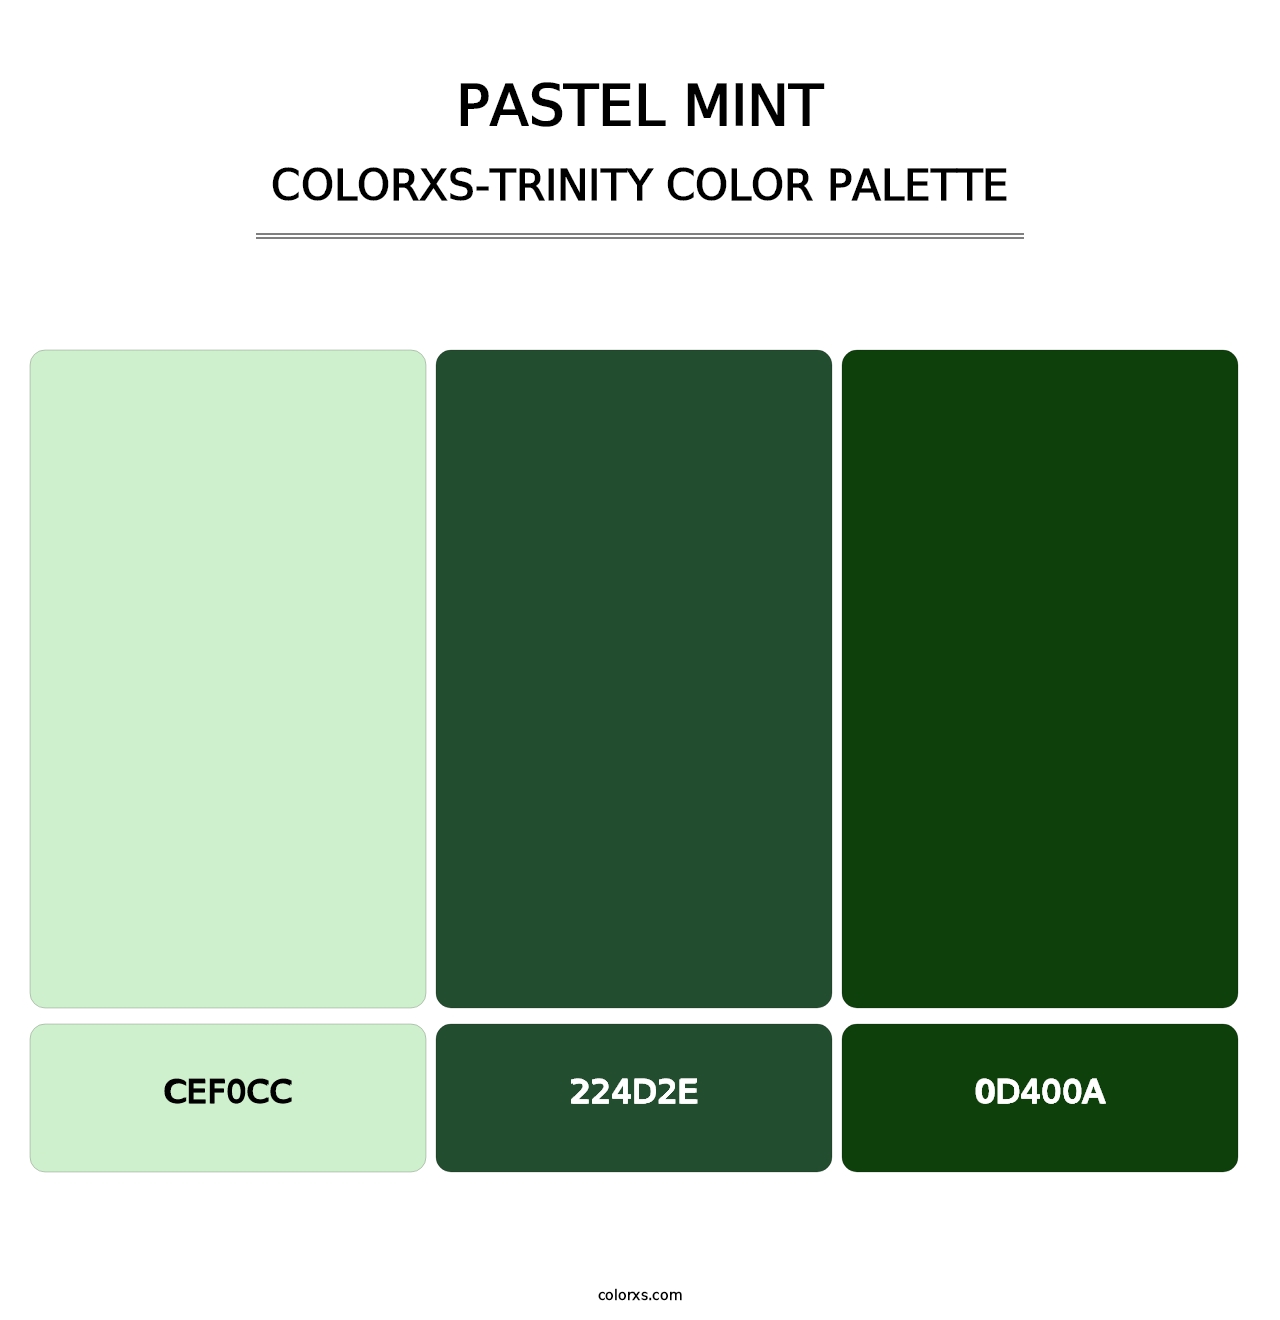 Pastel Mint - Colorxs Trinity Palette